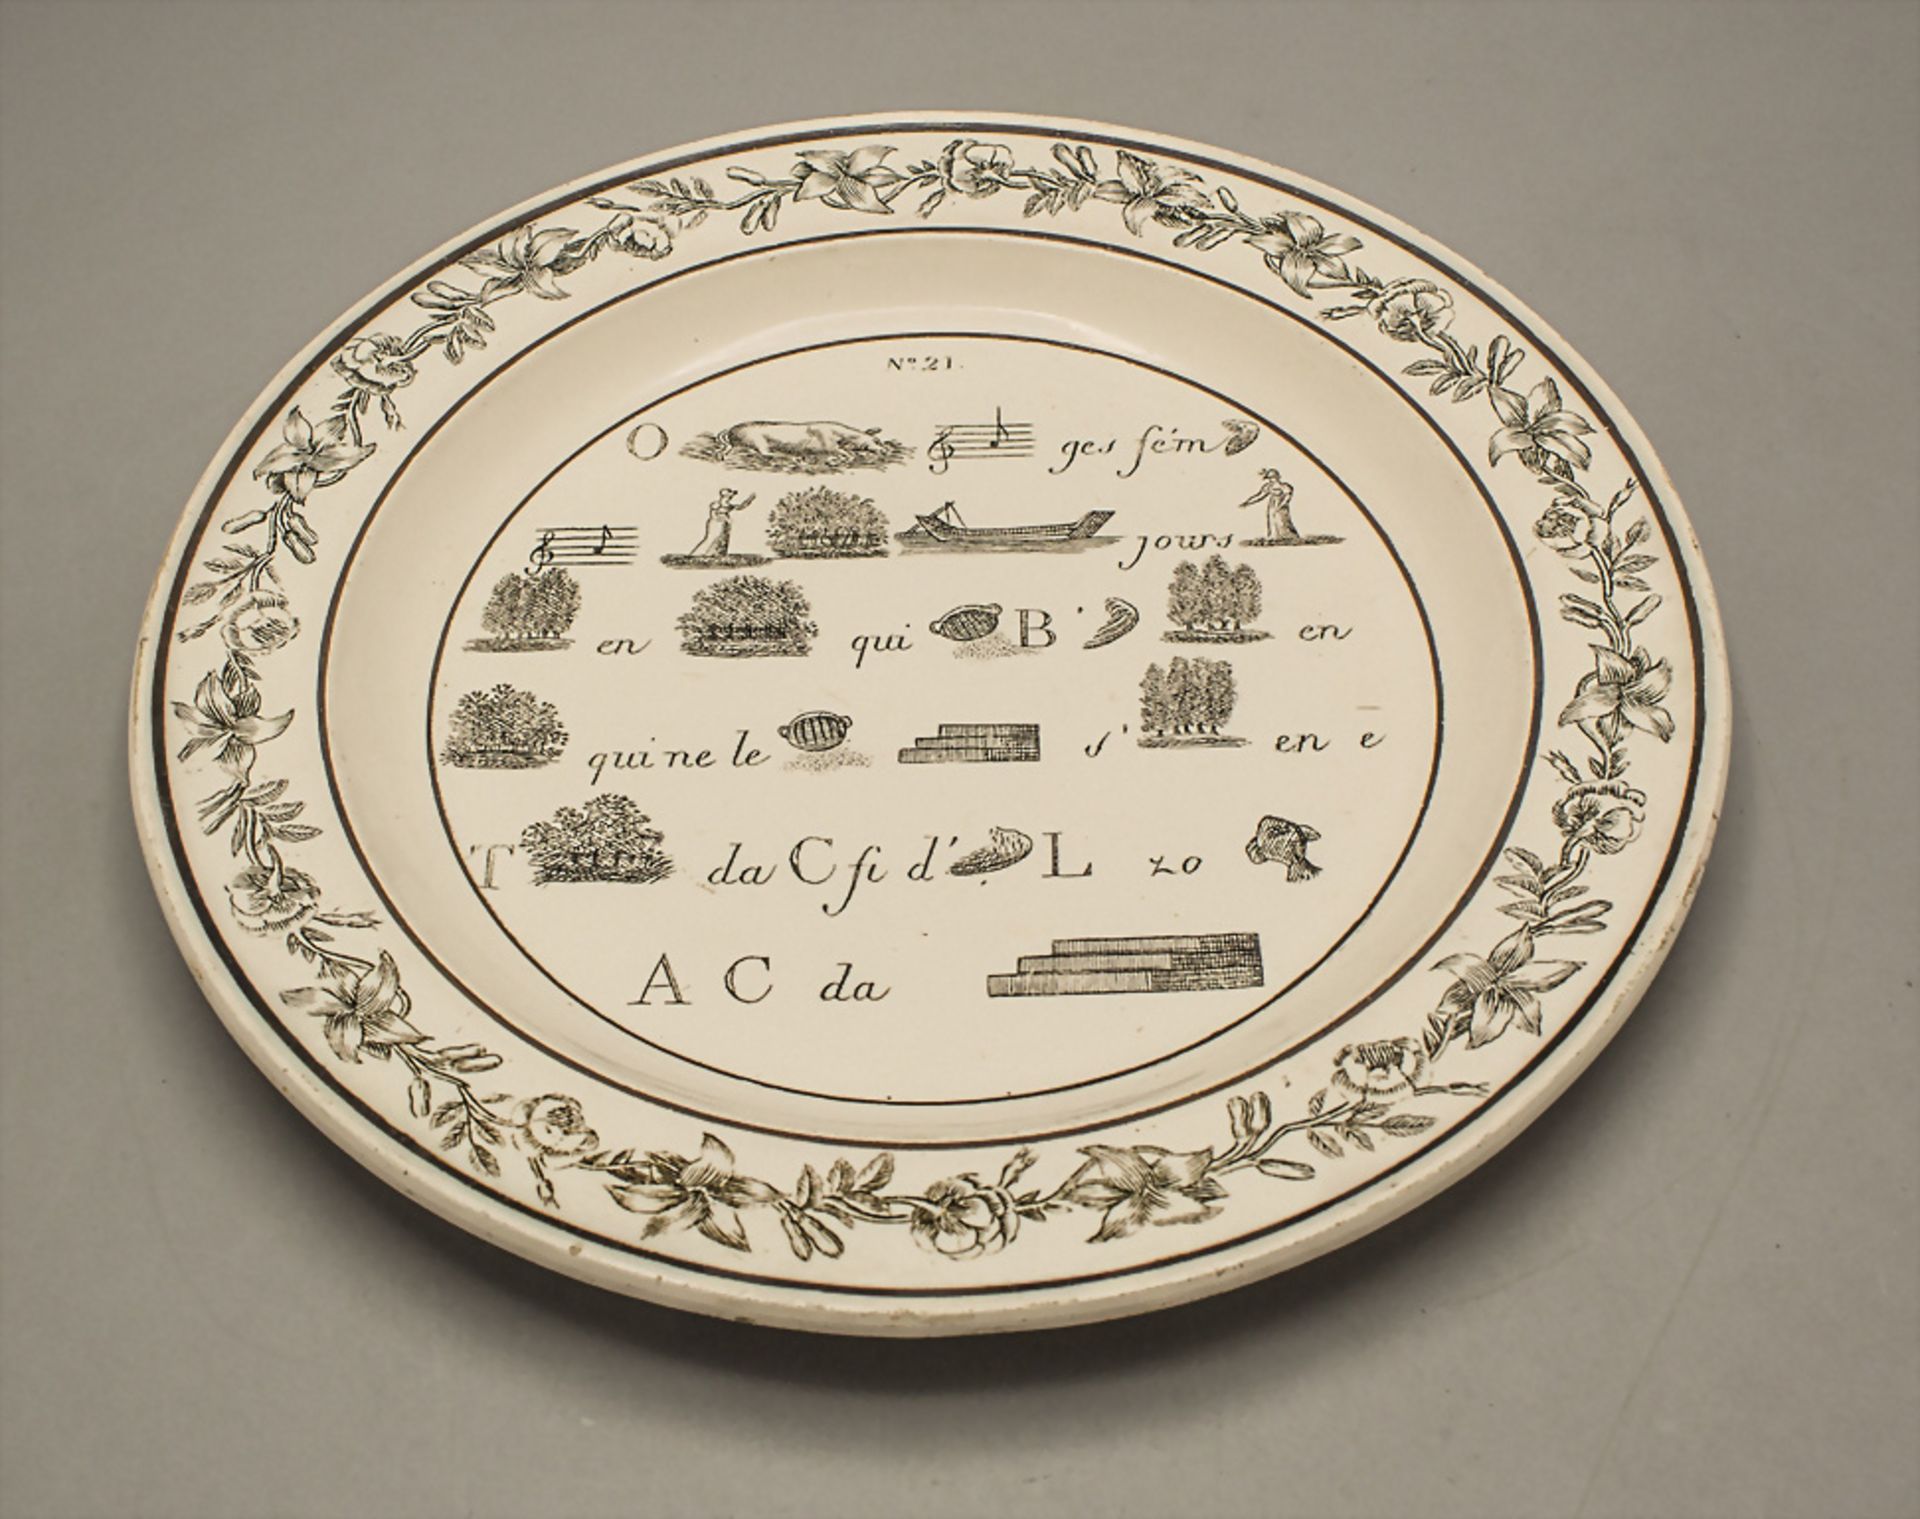 Rebus Teller / A creamware plate with rebus / puzzle, wohl Creil-Montereau & Choisy-le-Roi, um 1825